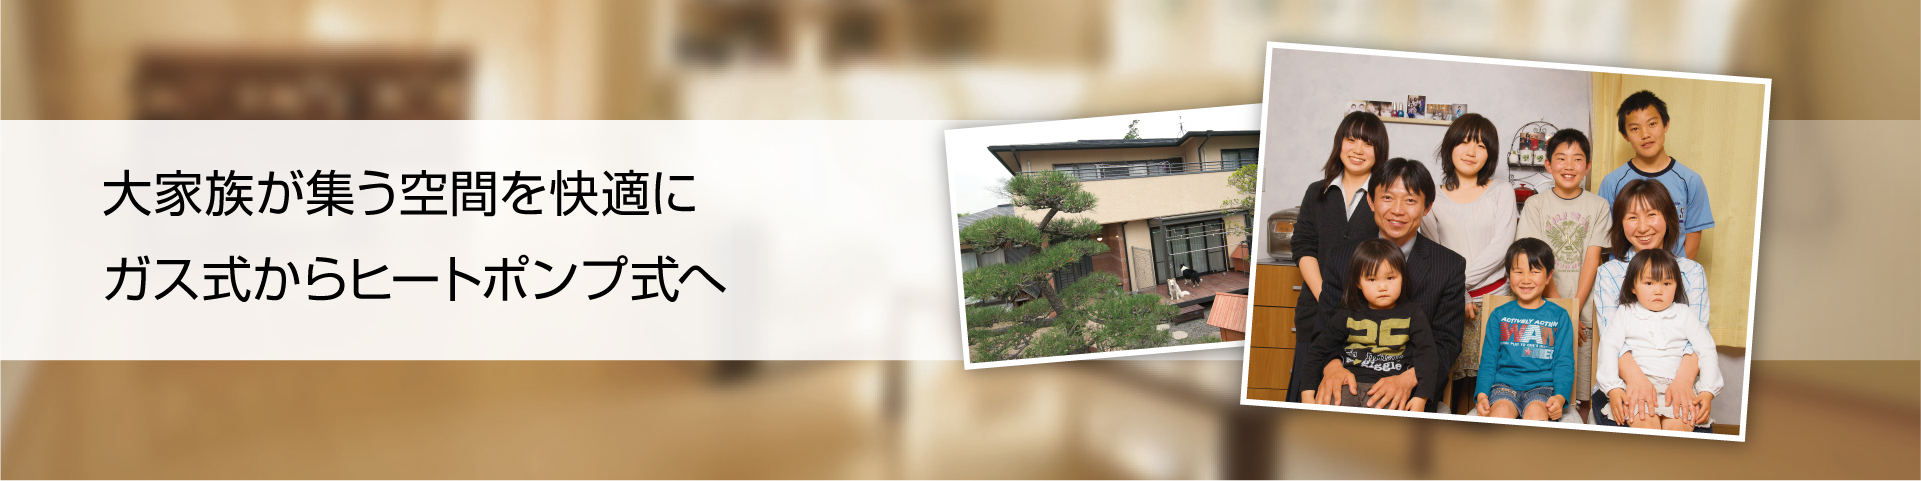 大家族が集う空間を快適に ガス式からヒートポンプ式へ 奈良県生駒市　湯浅様邸